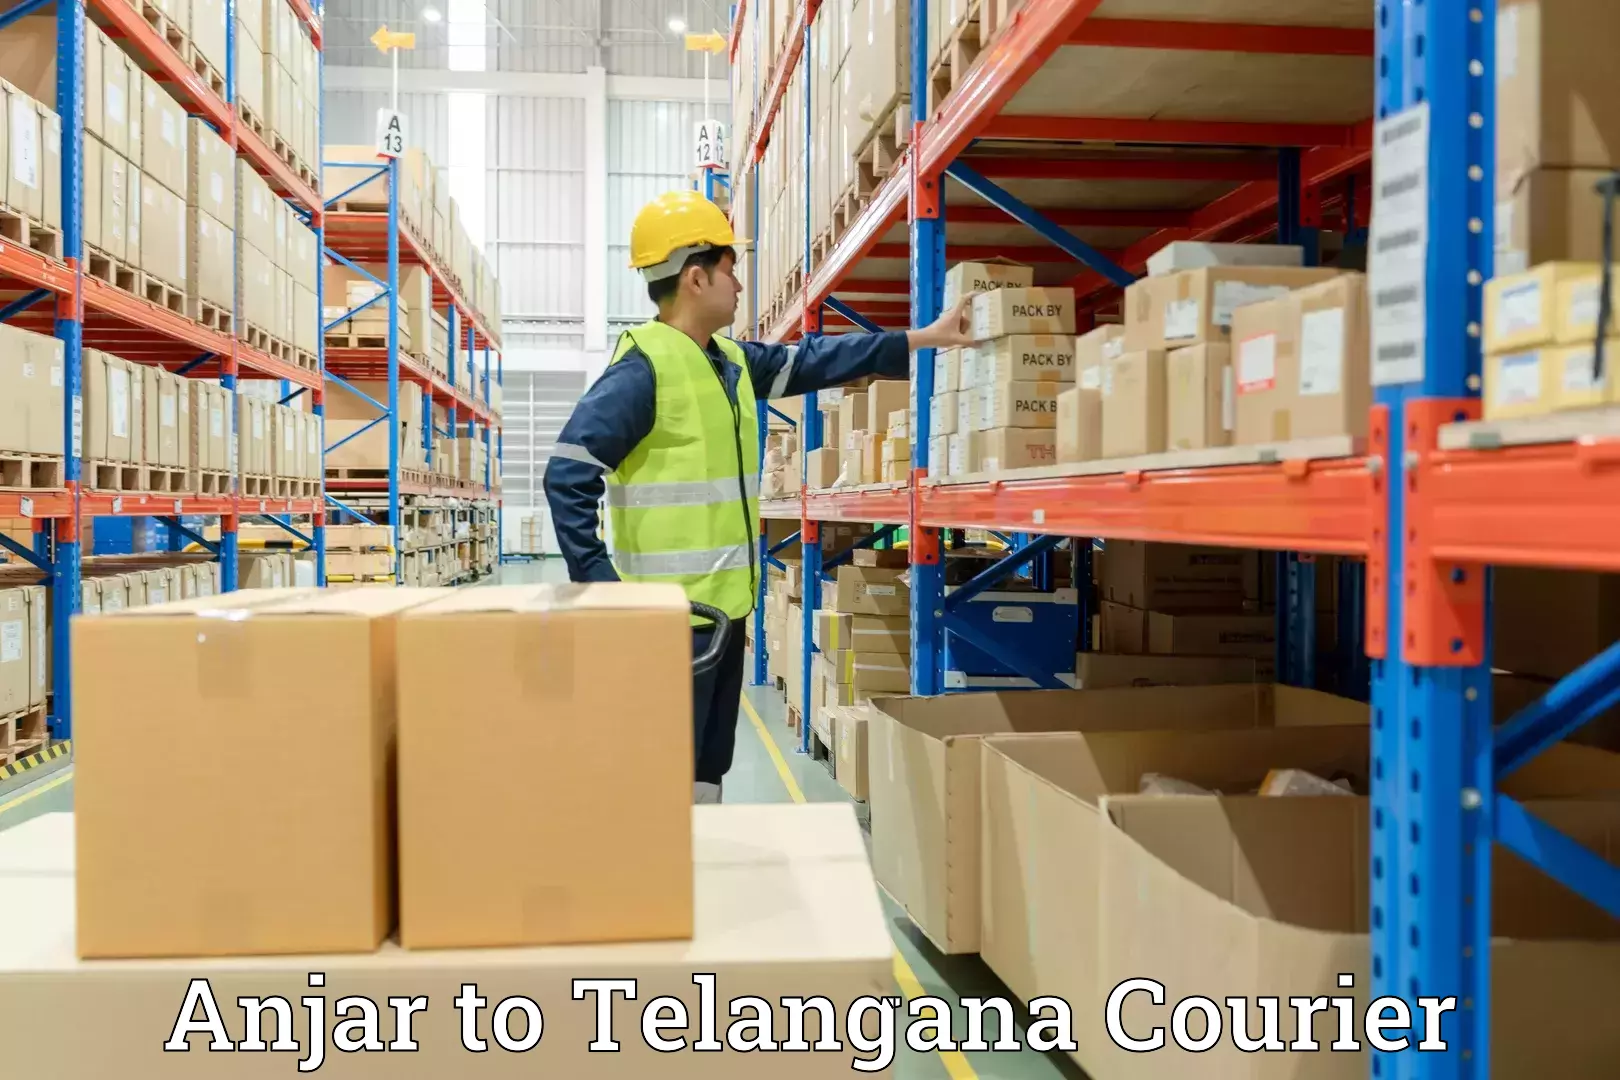 Professional moving company Anjar to Telangana